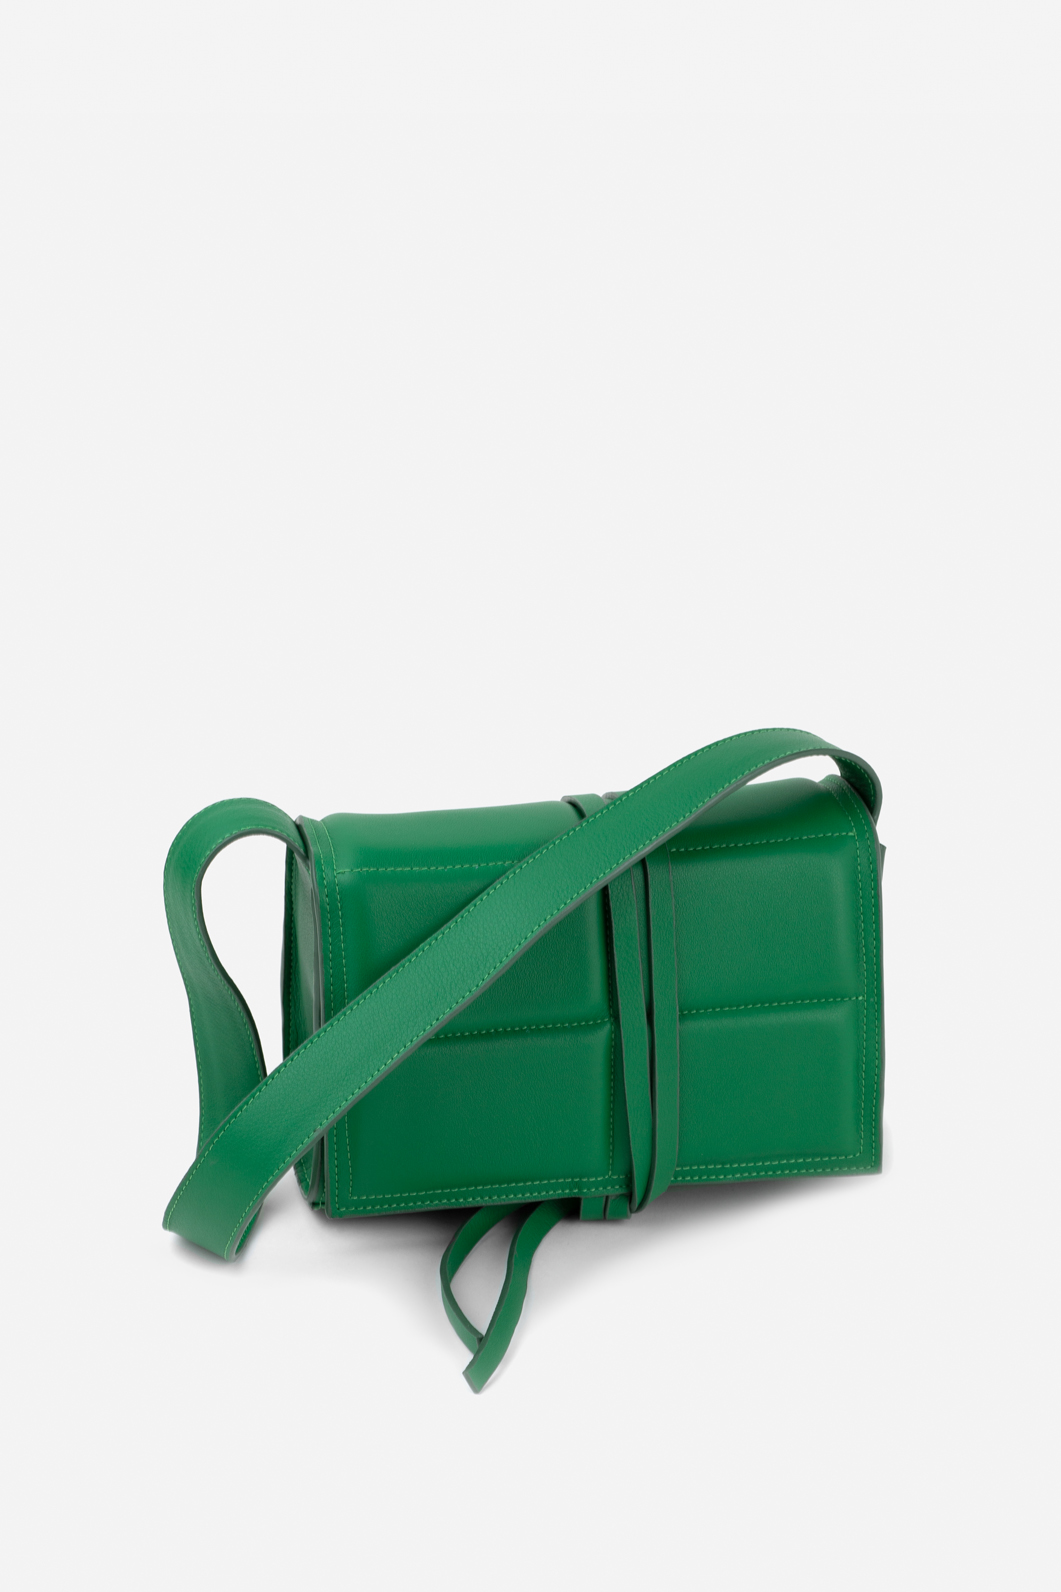 Vianne green leather
baguette bag /gold/